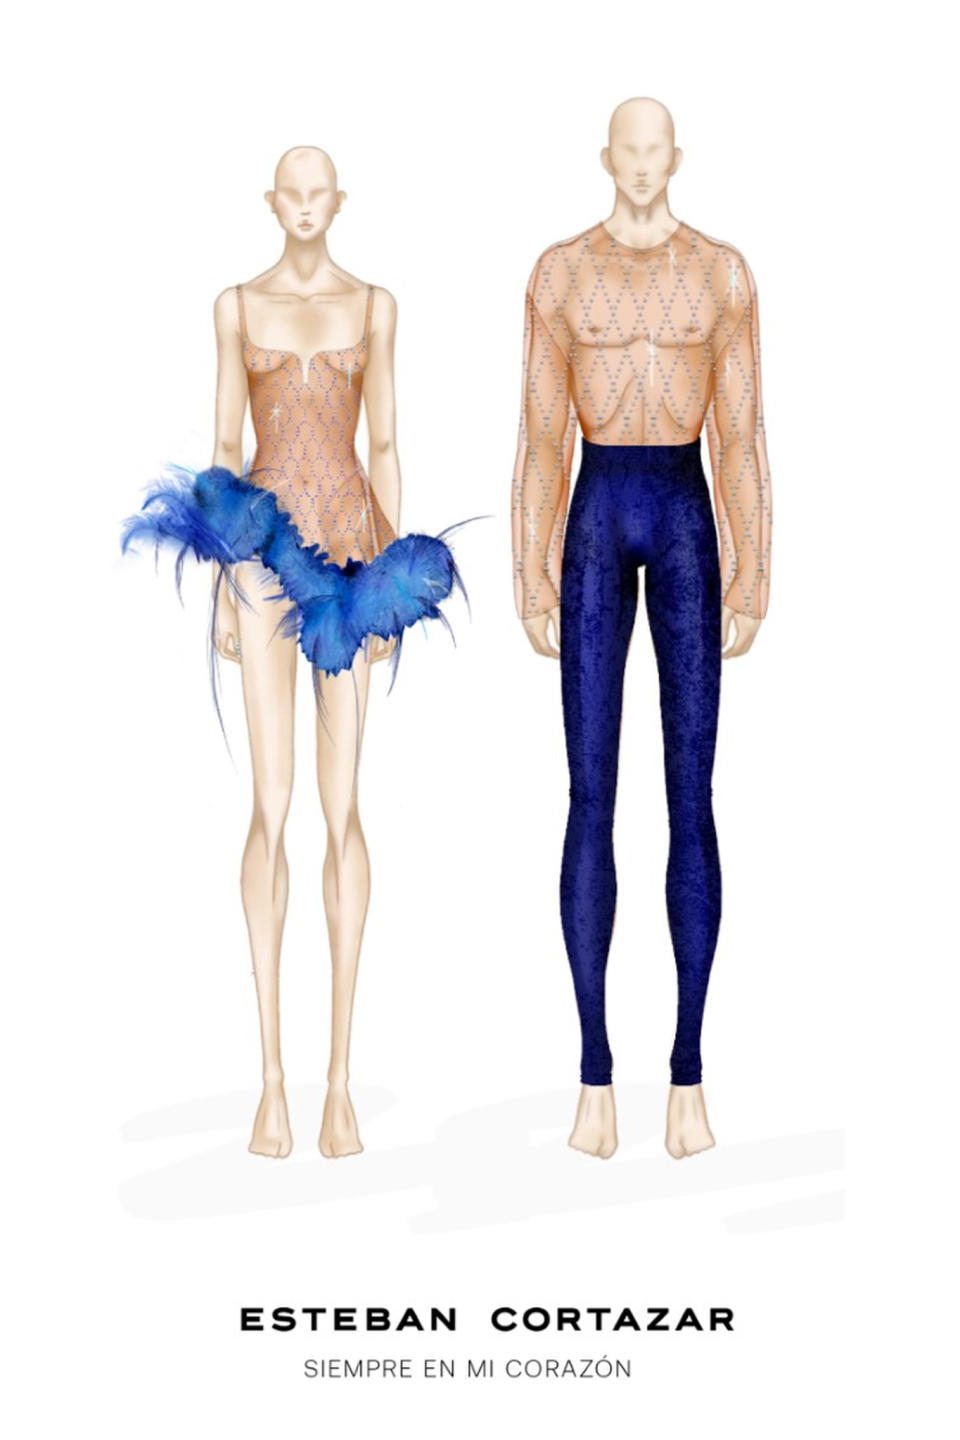 Sketches of Esteban Cortázar’s costume designs for Miami Ballet.